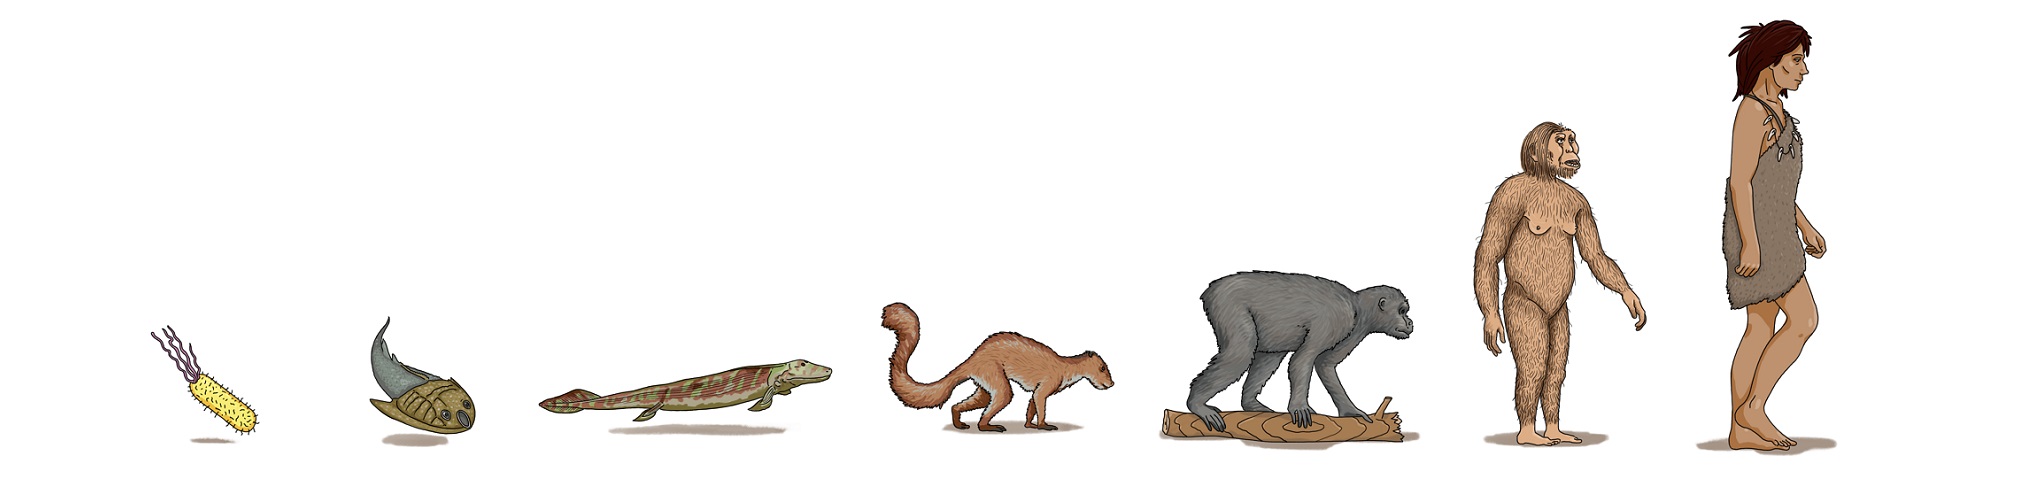 Evolution-of-Height2.jpg